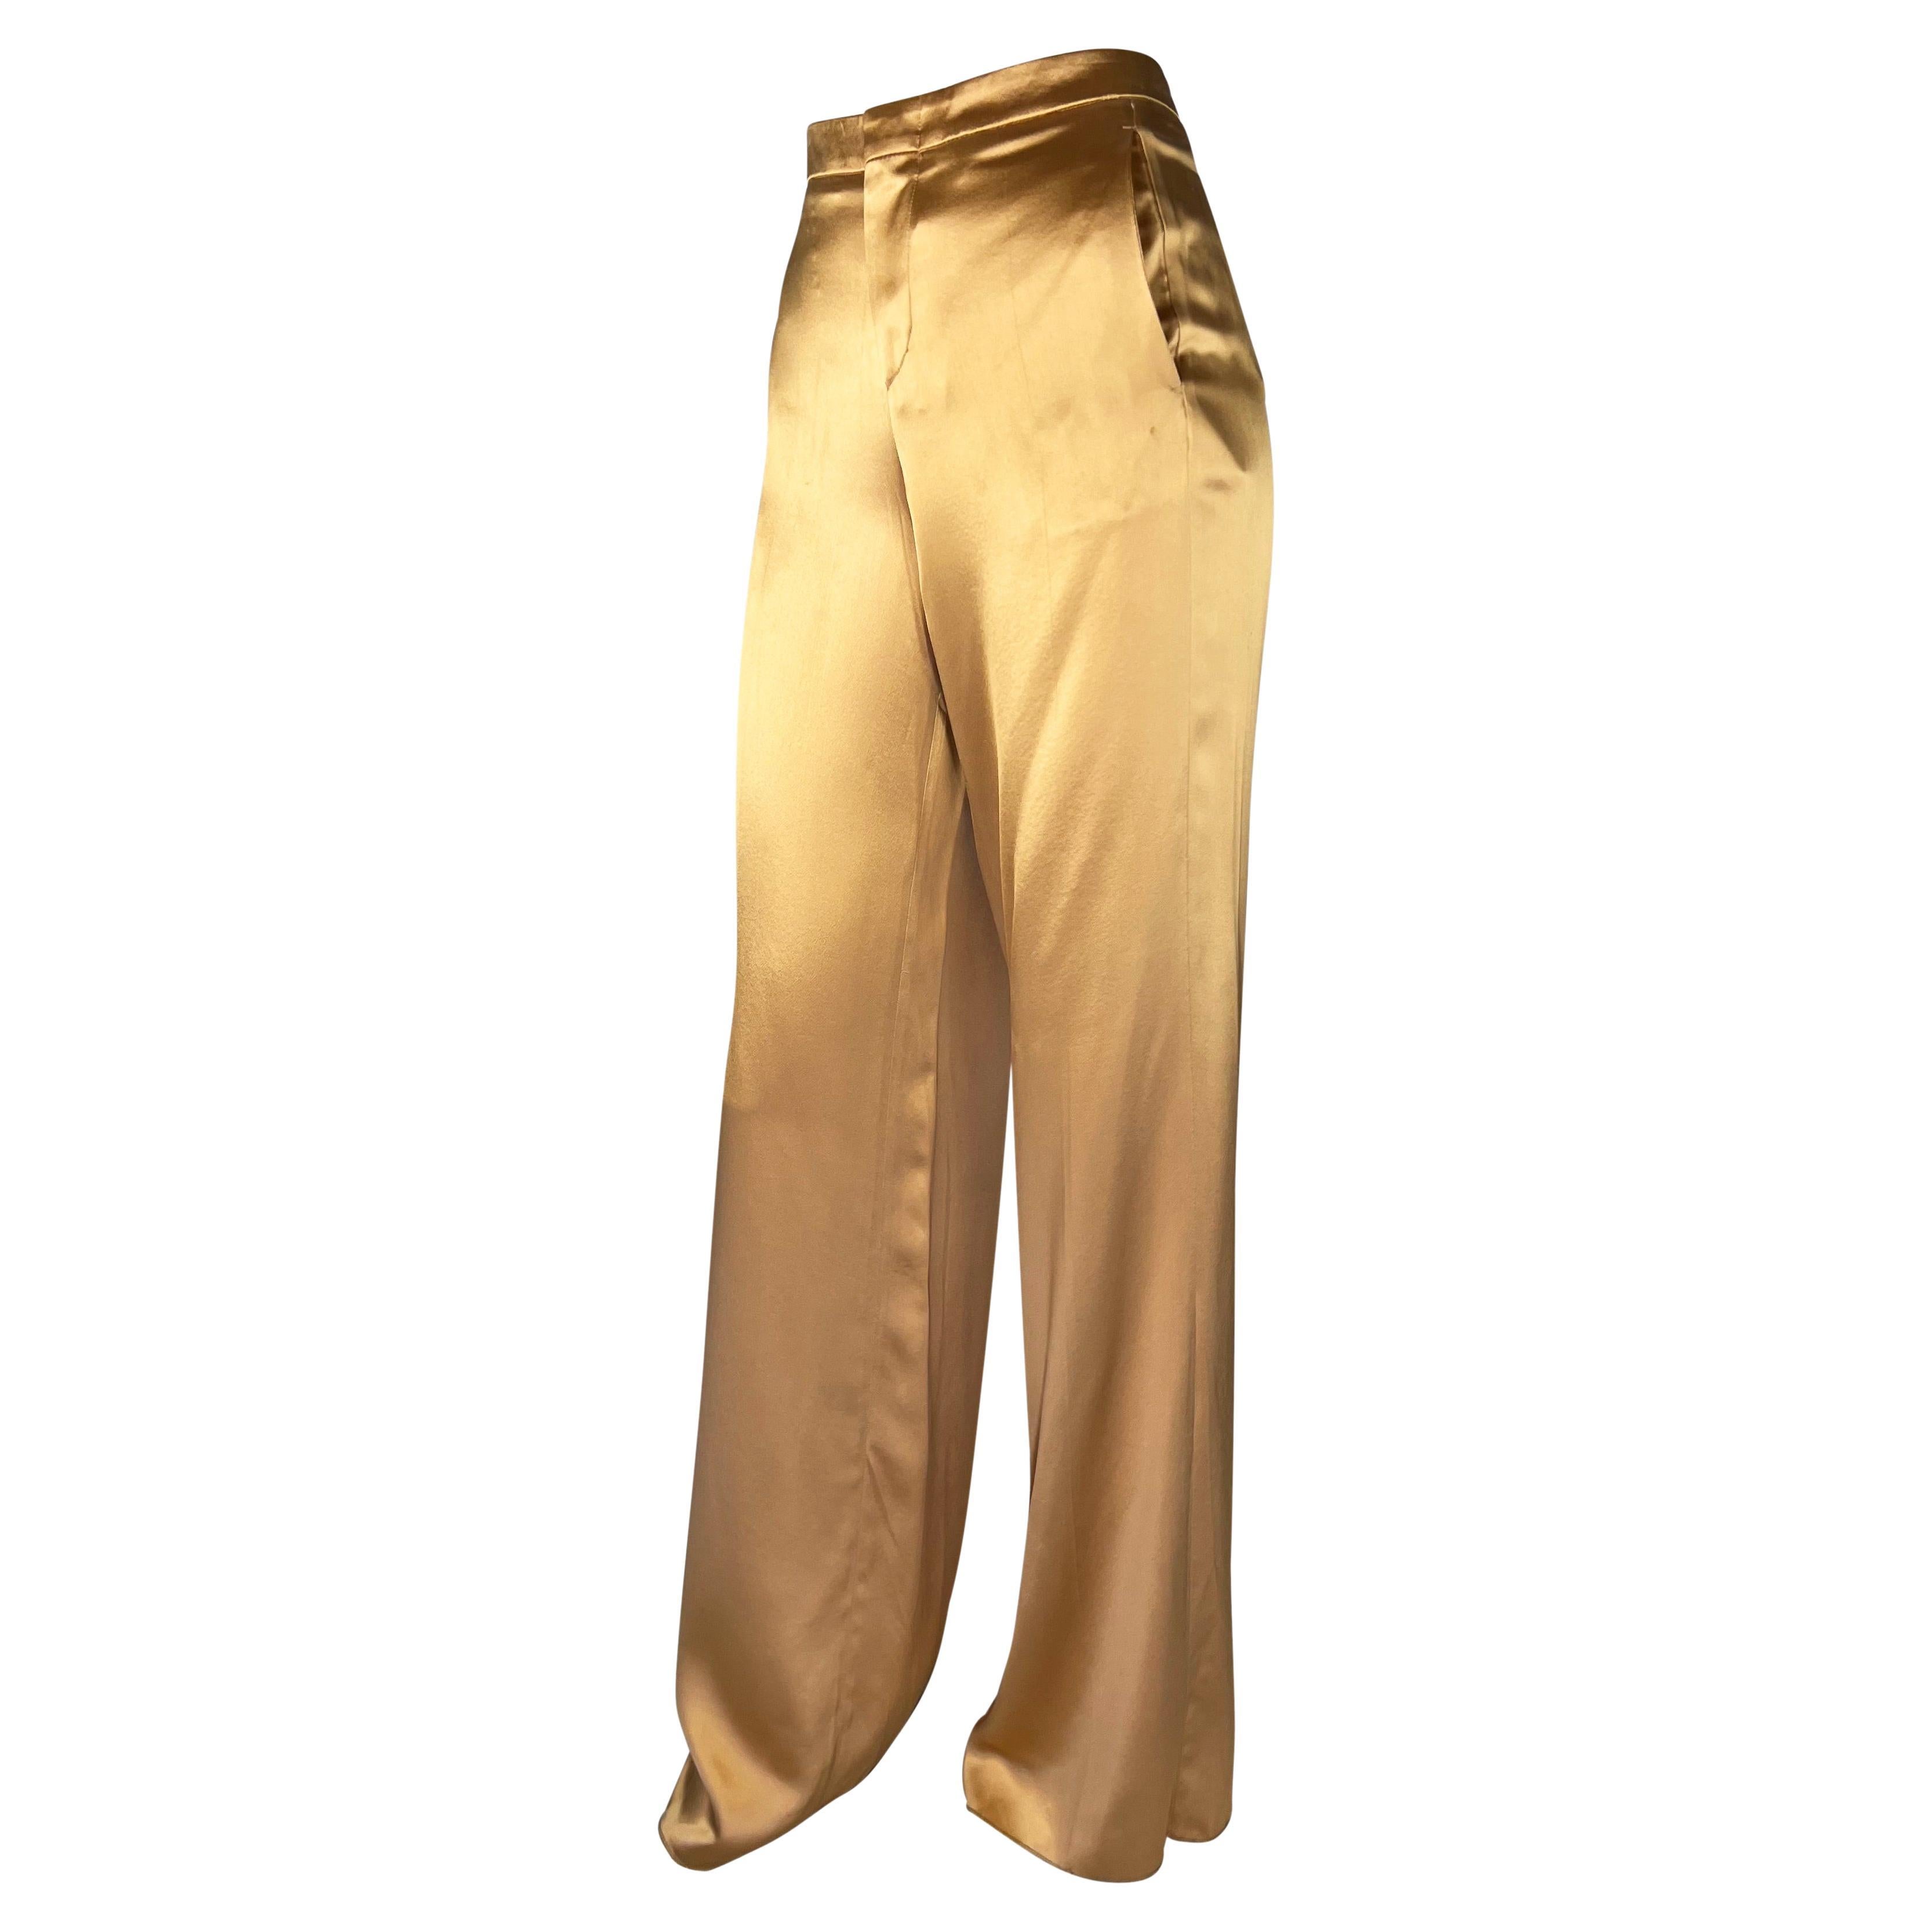 Wir präsentieren eine luxuriöse Hose aus goldener Seidenmischung, entworfen von Tom Ford für die Gucci Frühjahr/Sommer-Kollektion 2001. Die Seiden- und Viskosemischung und die weite Beinkonstruktion verleihen dieser Hose ein schimmerndes Aussehen,